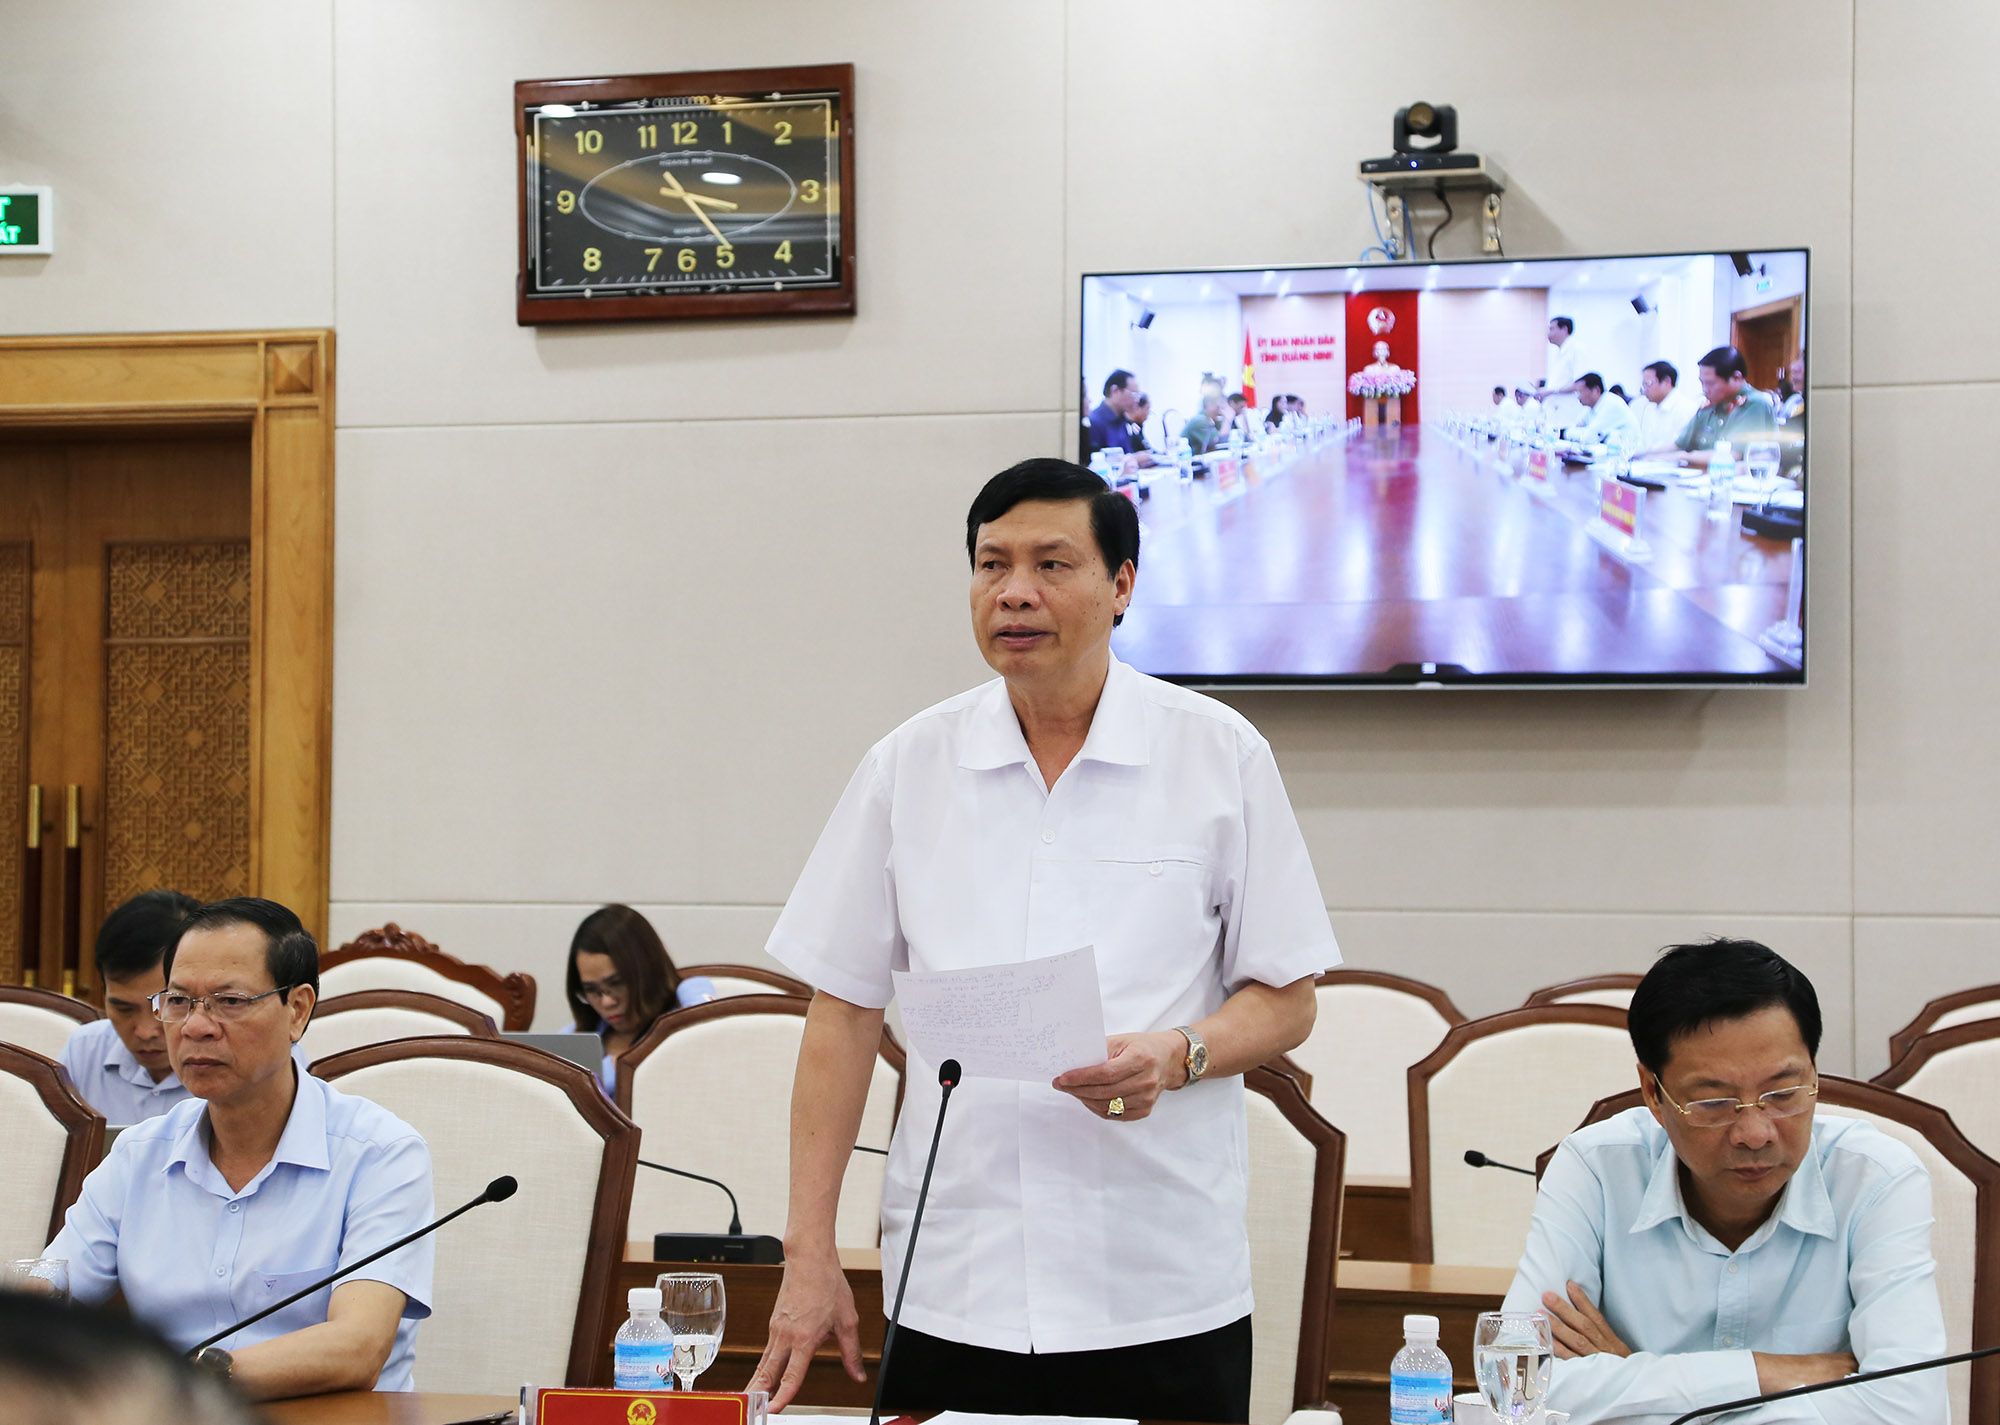 Đồng chí Nguyễn Đức Long, Phó Bí thư Tinh ủy, Chủ tịch UBND tỉnh, phát biểu tại buổi làm việc.